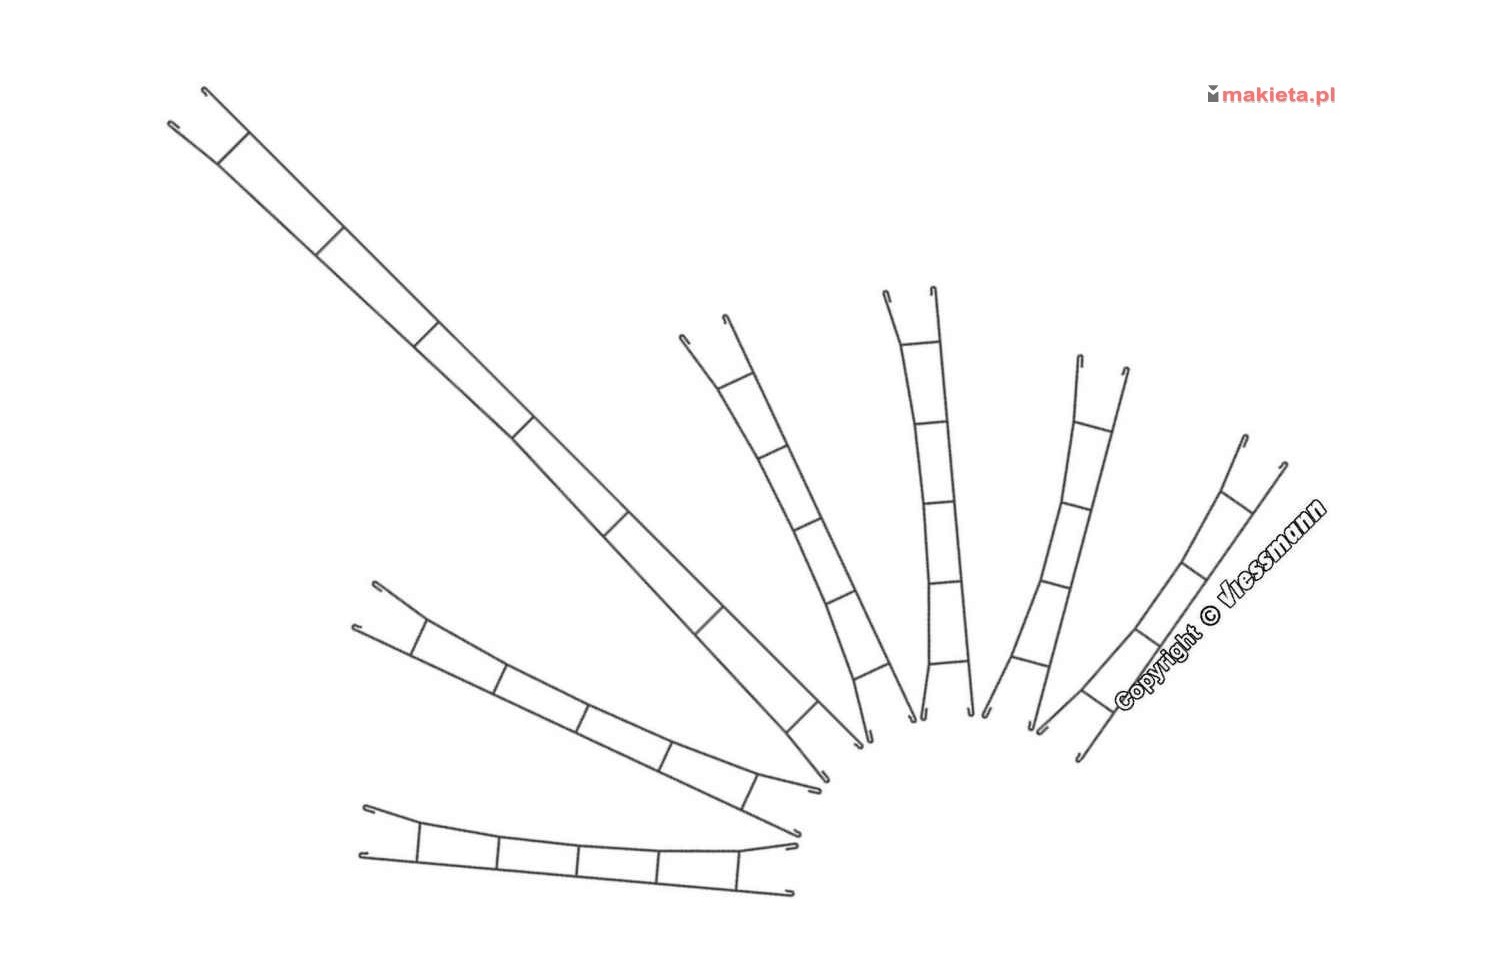 Viessmann 4332. Przewody sieci trakcyjnej, komplet, 5 sztuk x 61 mm, Ø 0,4 mm, skala N 1:160